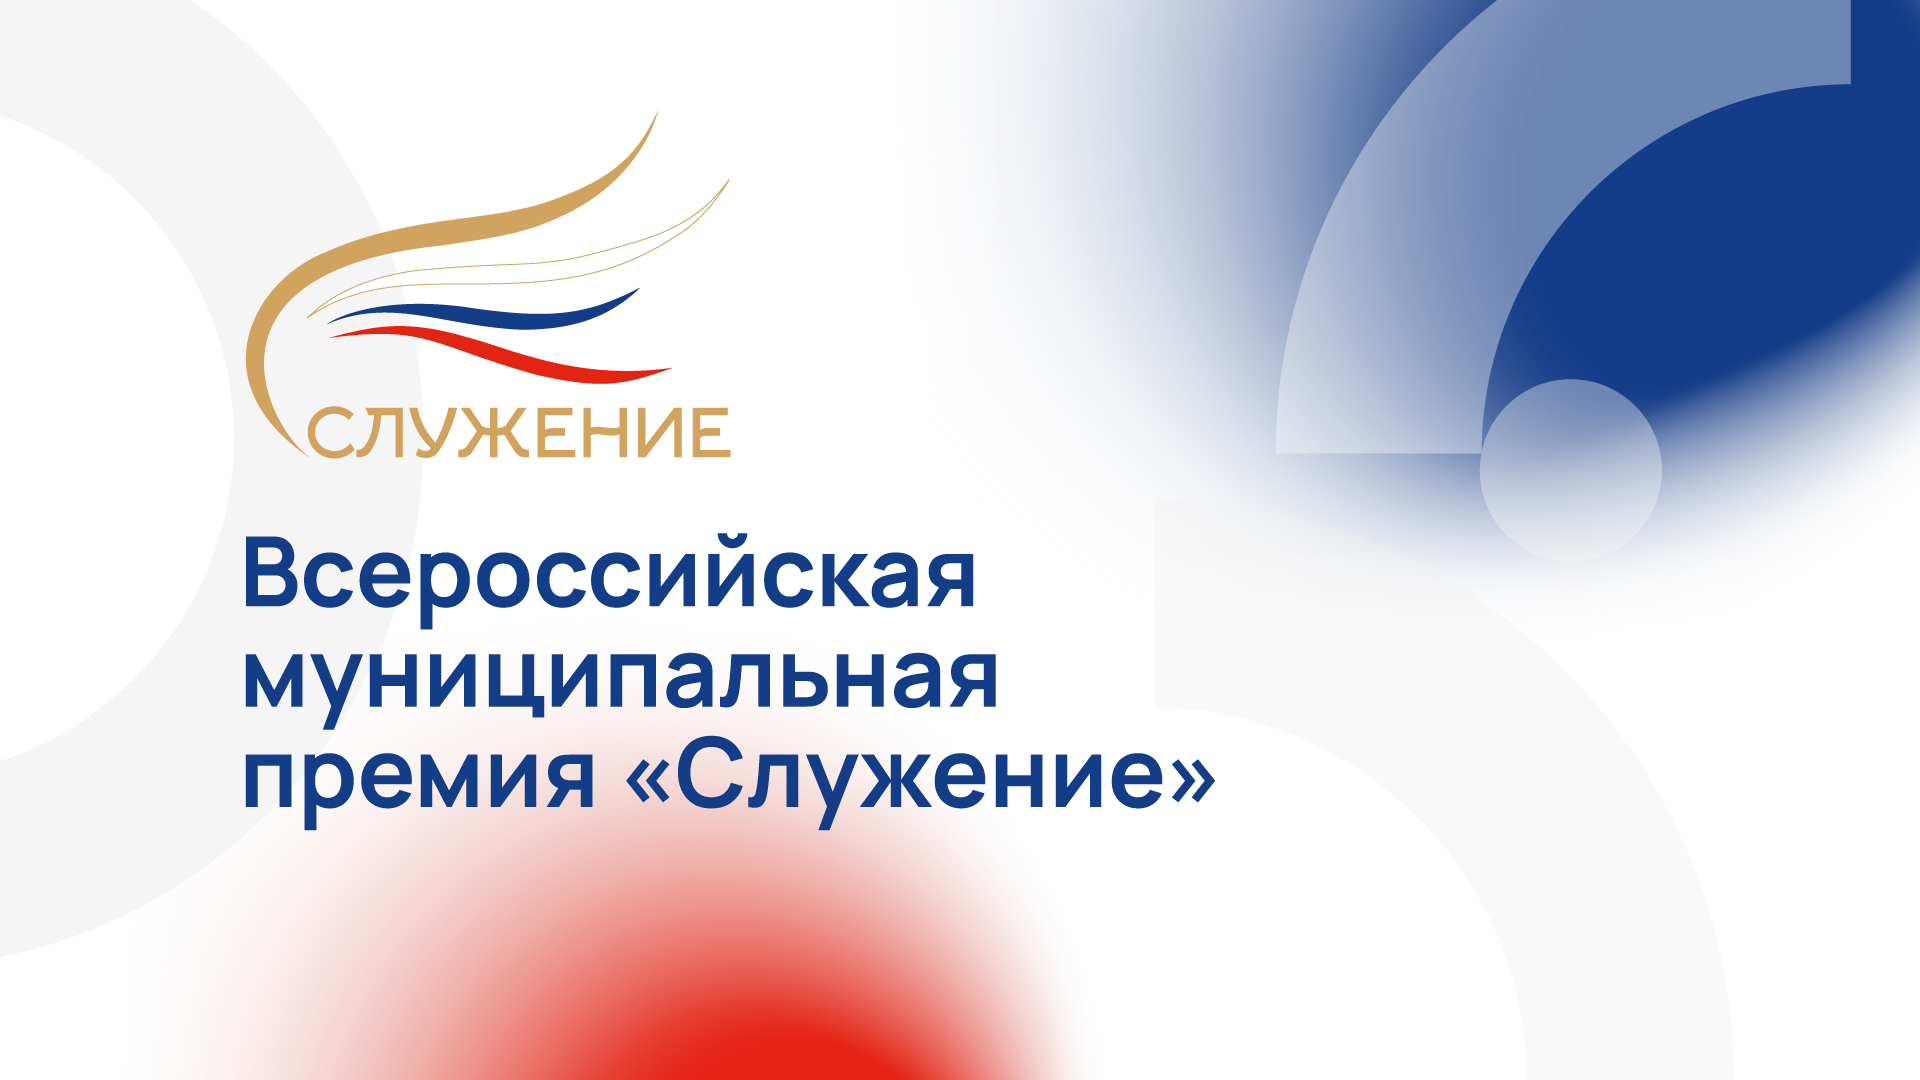 Приём заявок на соискание Всероссийской муниципальной премии «Служение» открыт до 13 декабря.